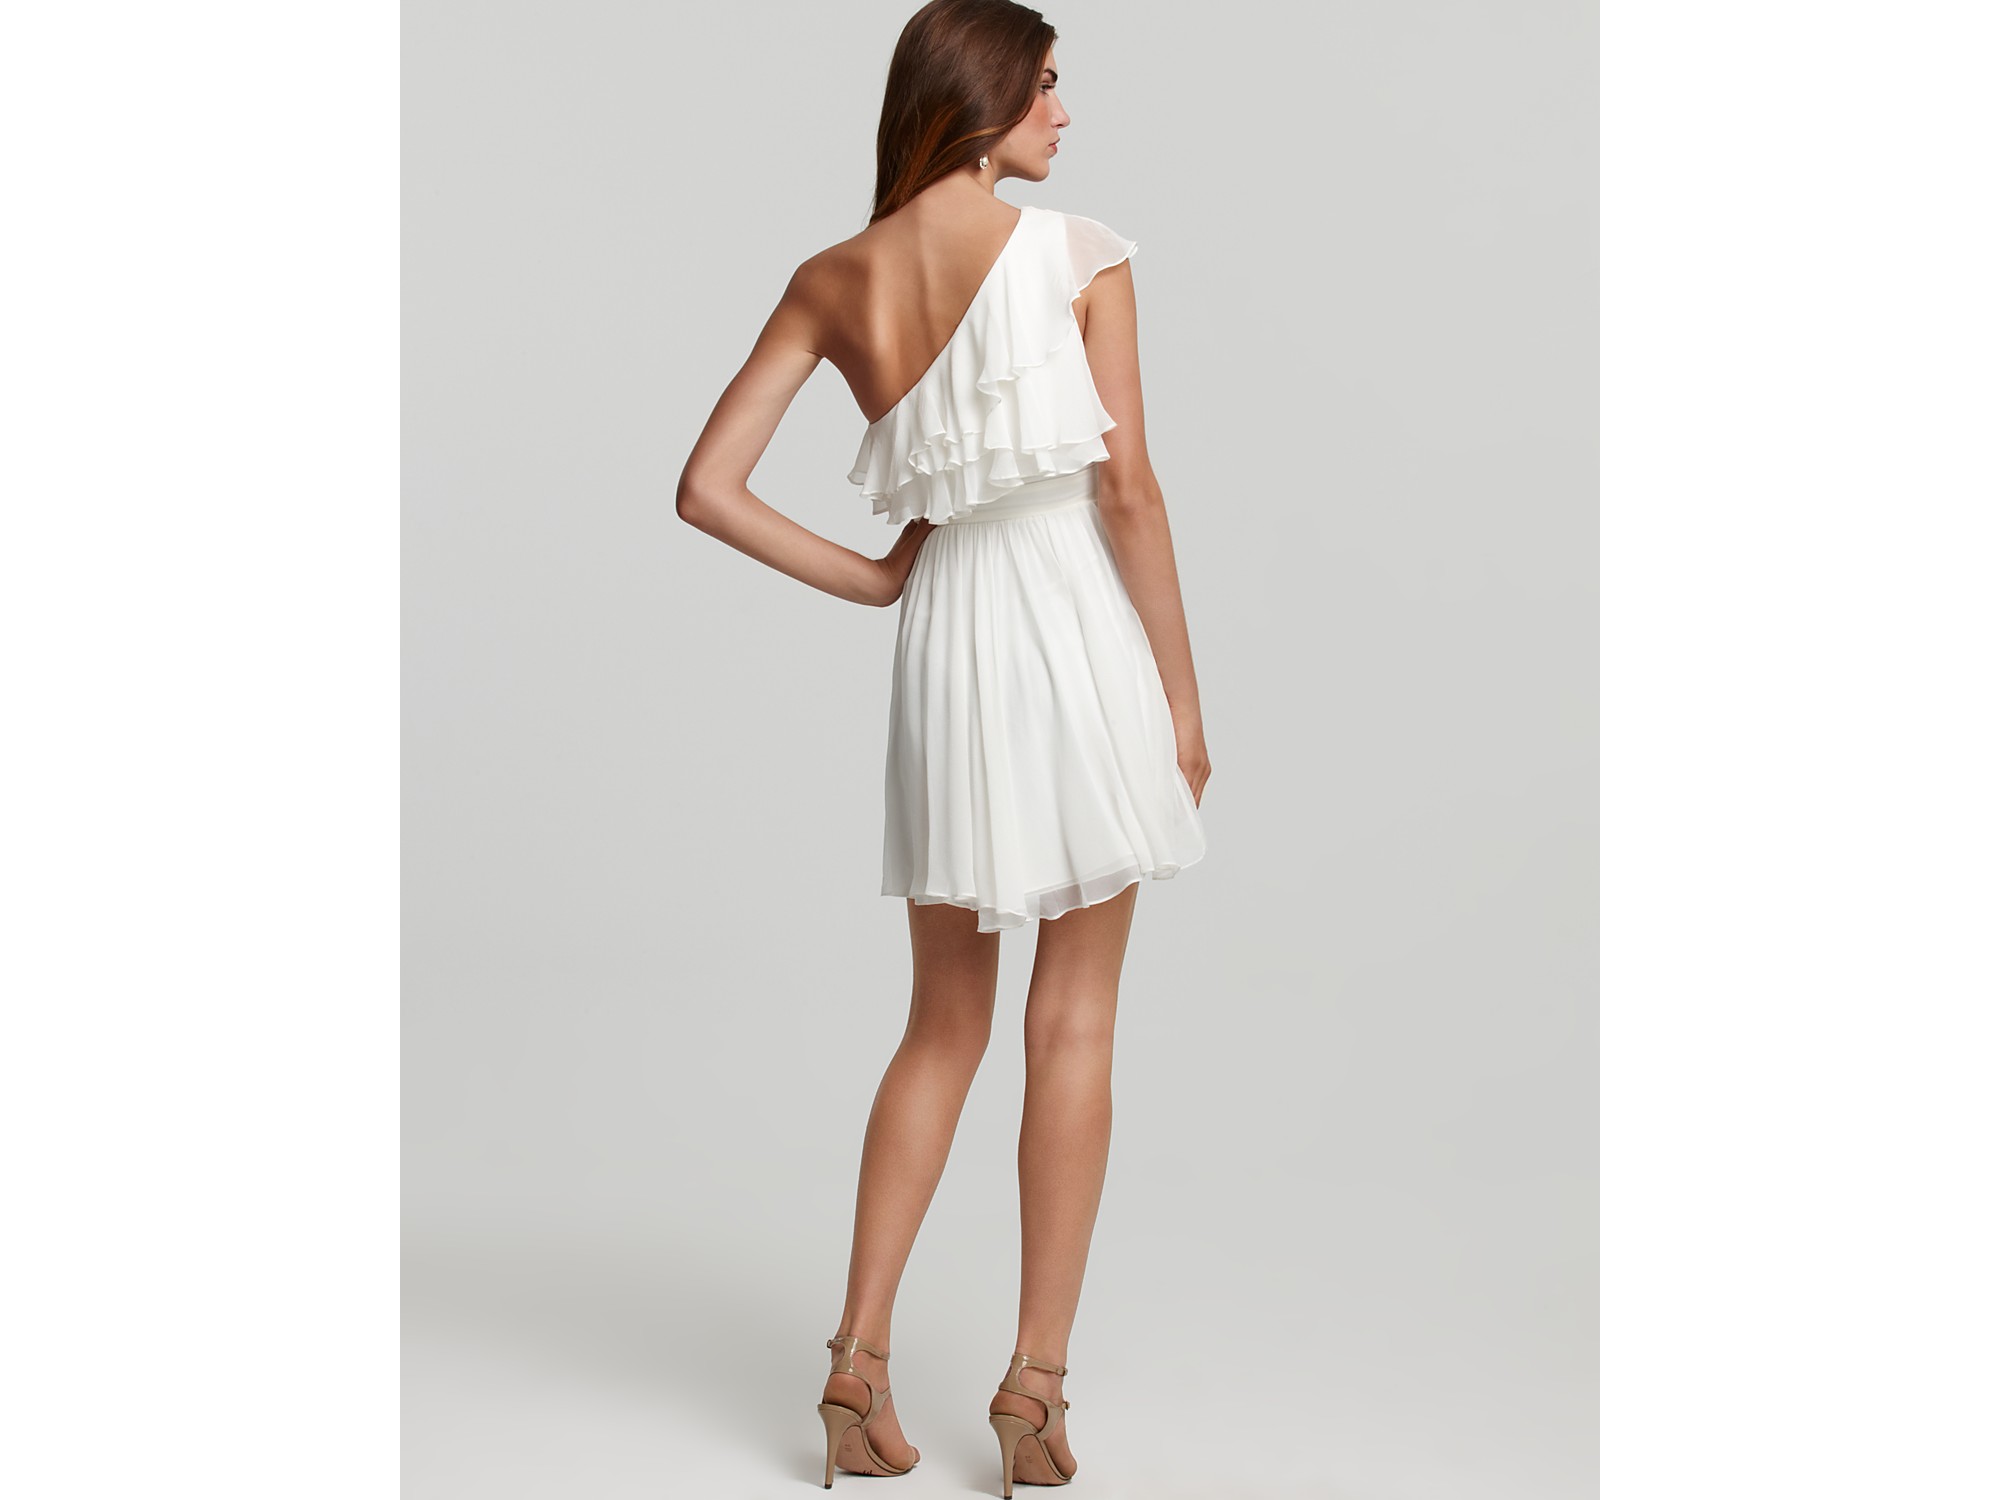 Lyst - Jill Stuart Dress One Shoulder Dress Ruffle in White2000 x 1500